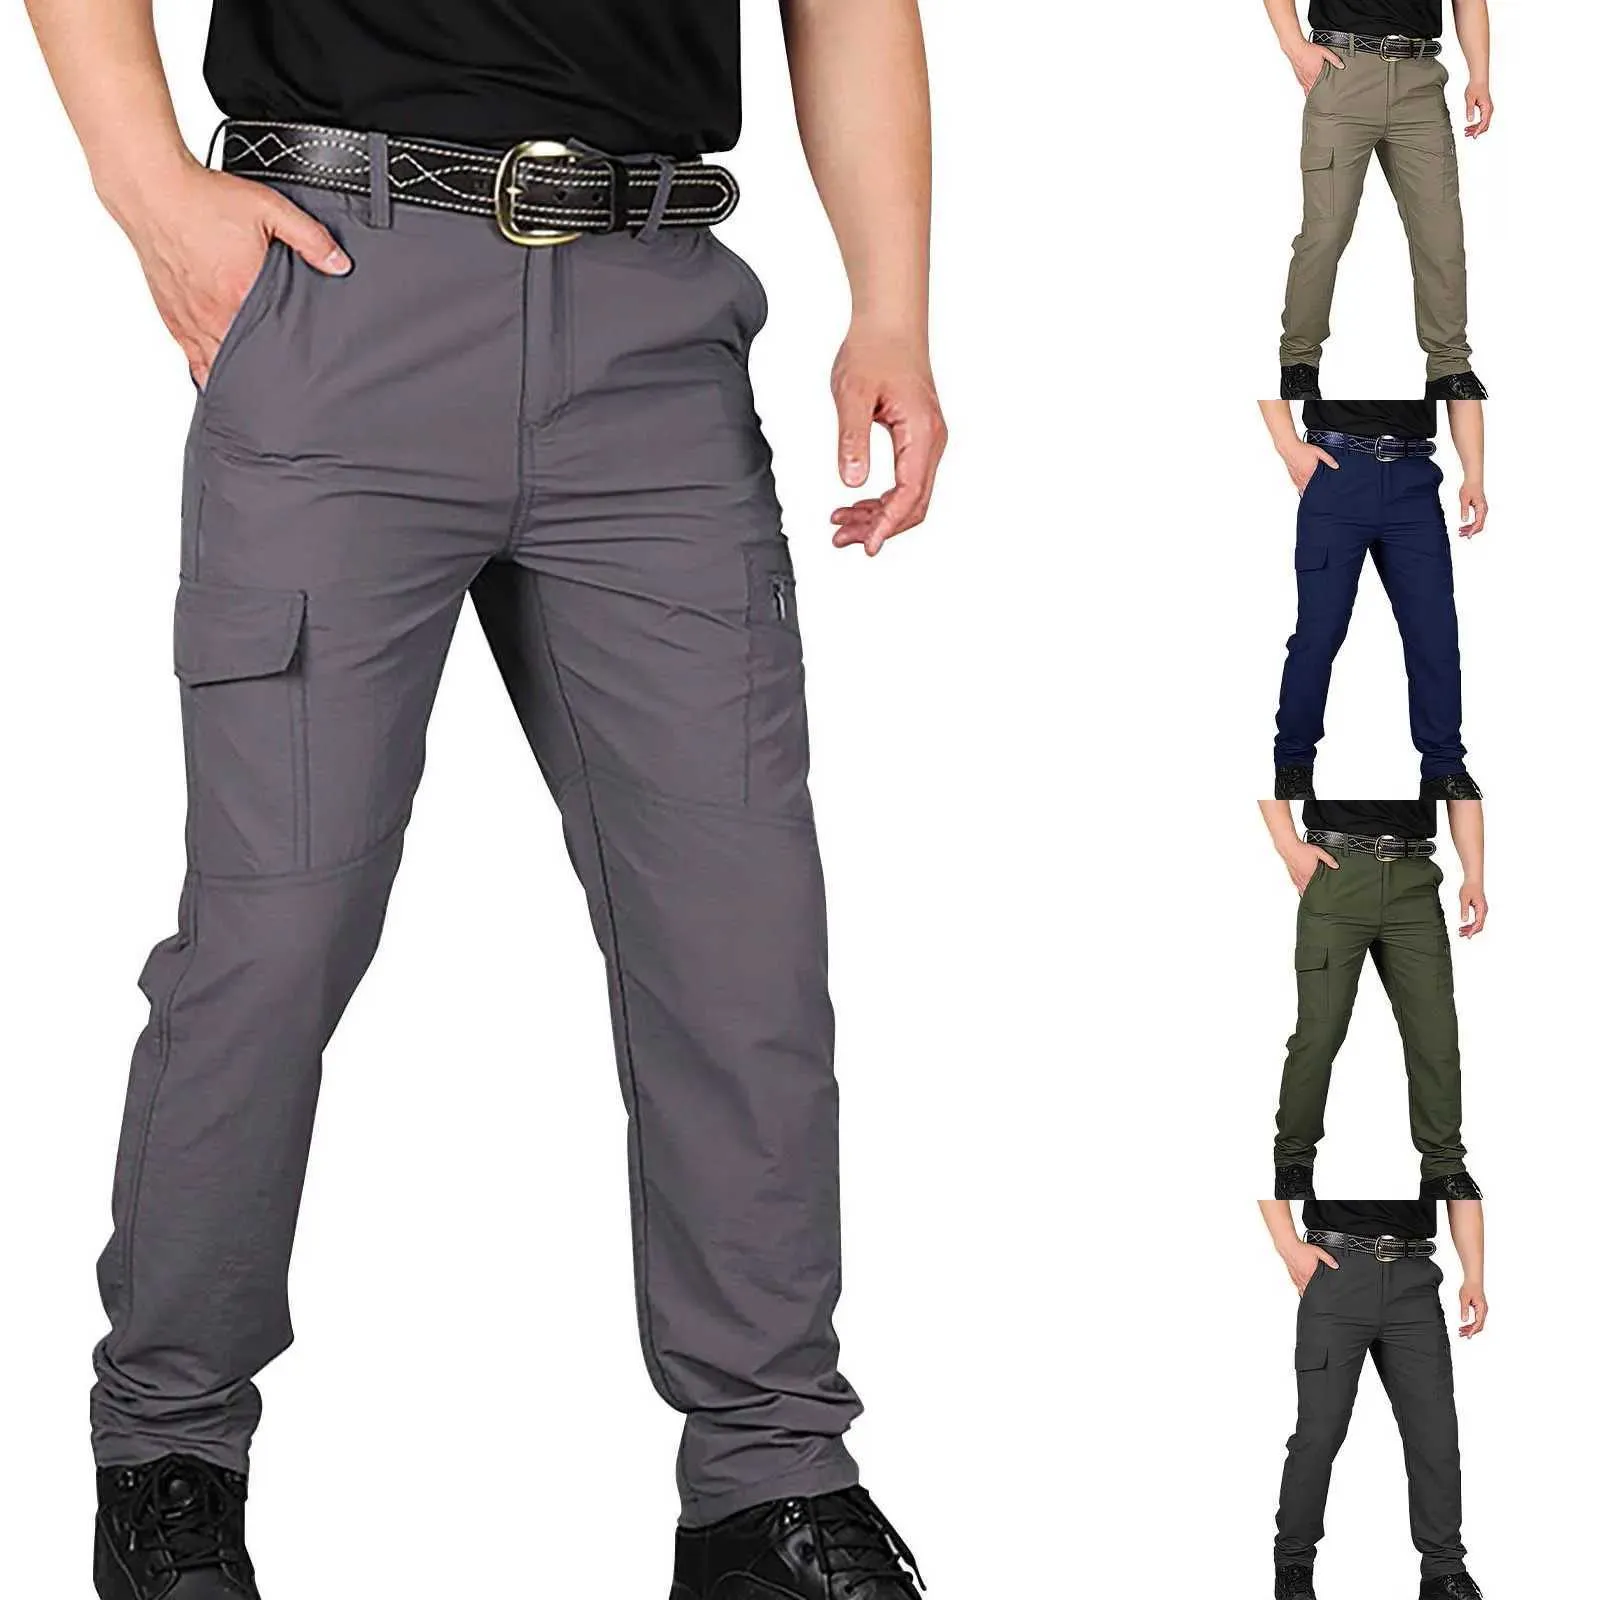 Pantalon masculin masculin urbain militaire pantalon tactique de combat soldat multiples poches imperméables et résistantes à l'entraînement décontracté jacketl2403